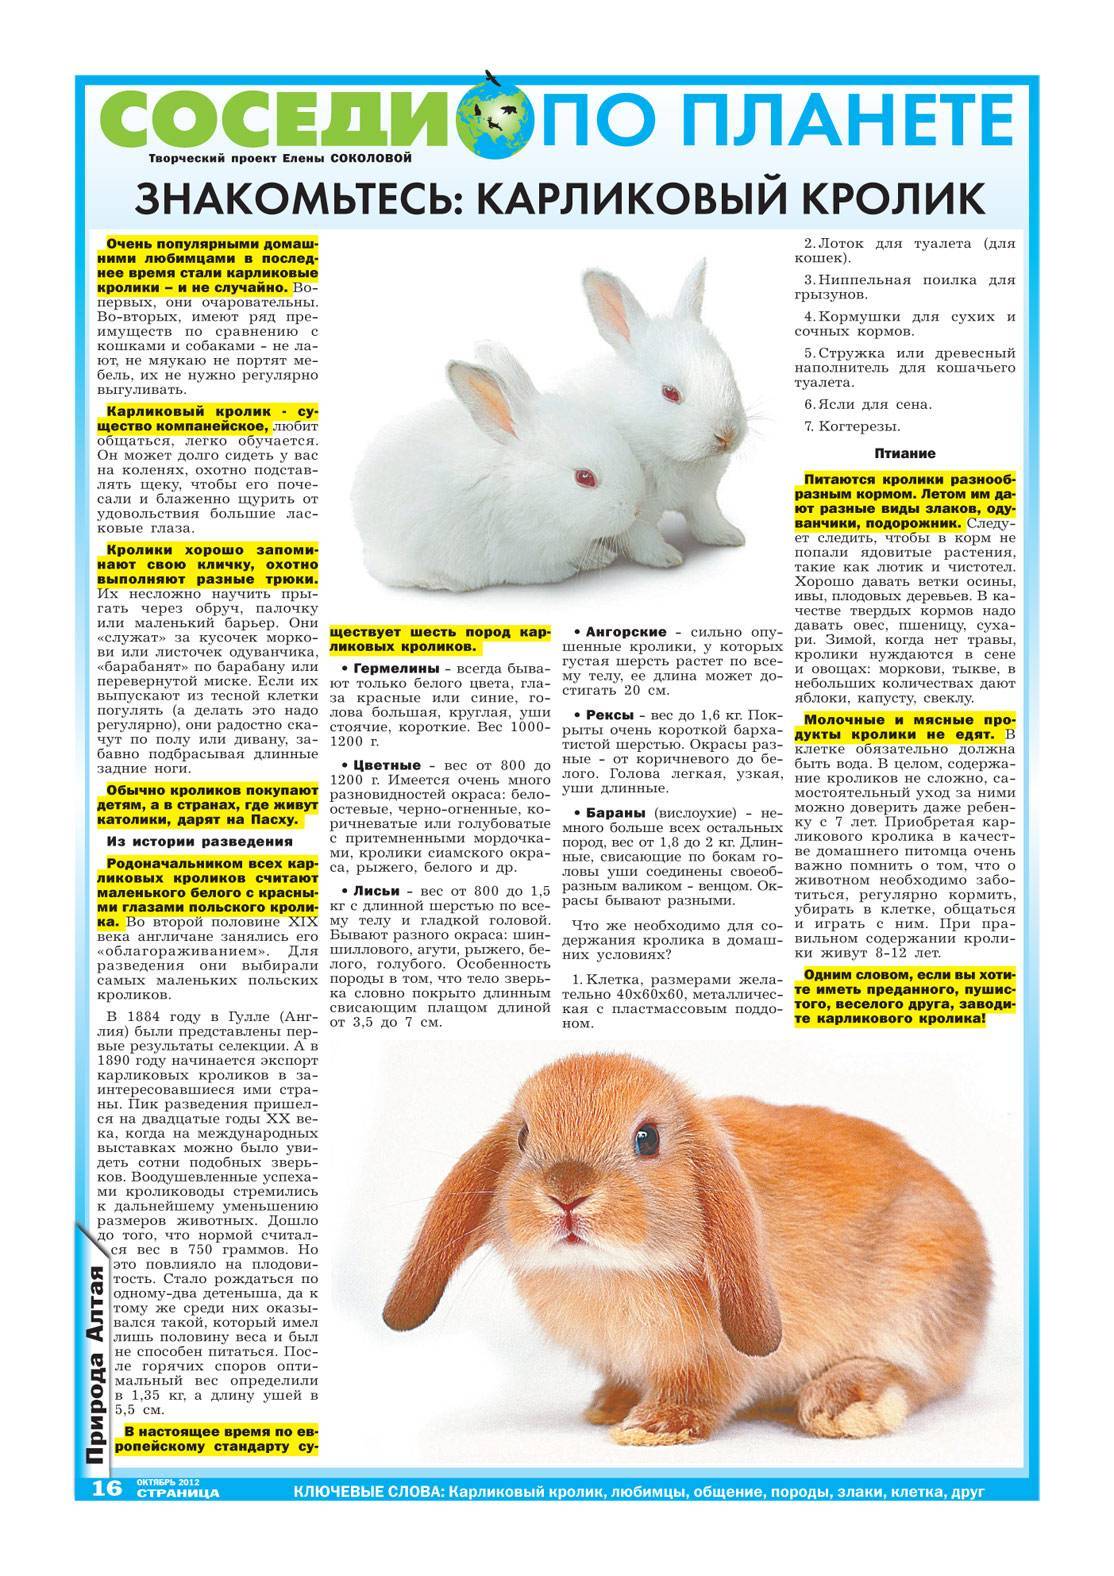 Карликовые кролики: уход и содержание, виды, что едят